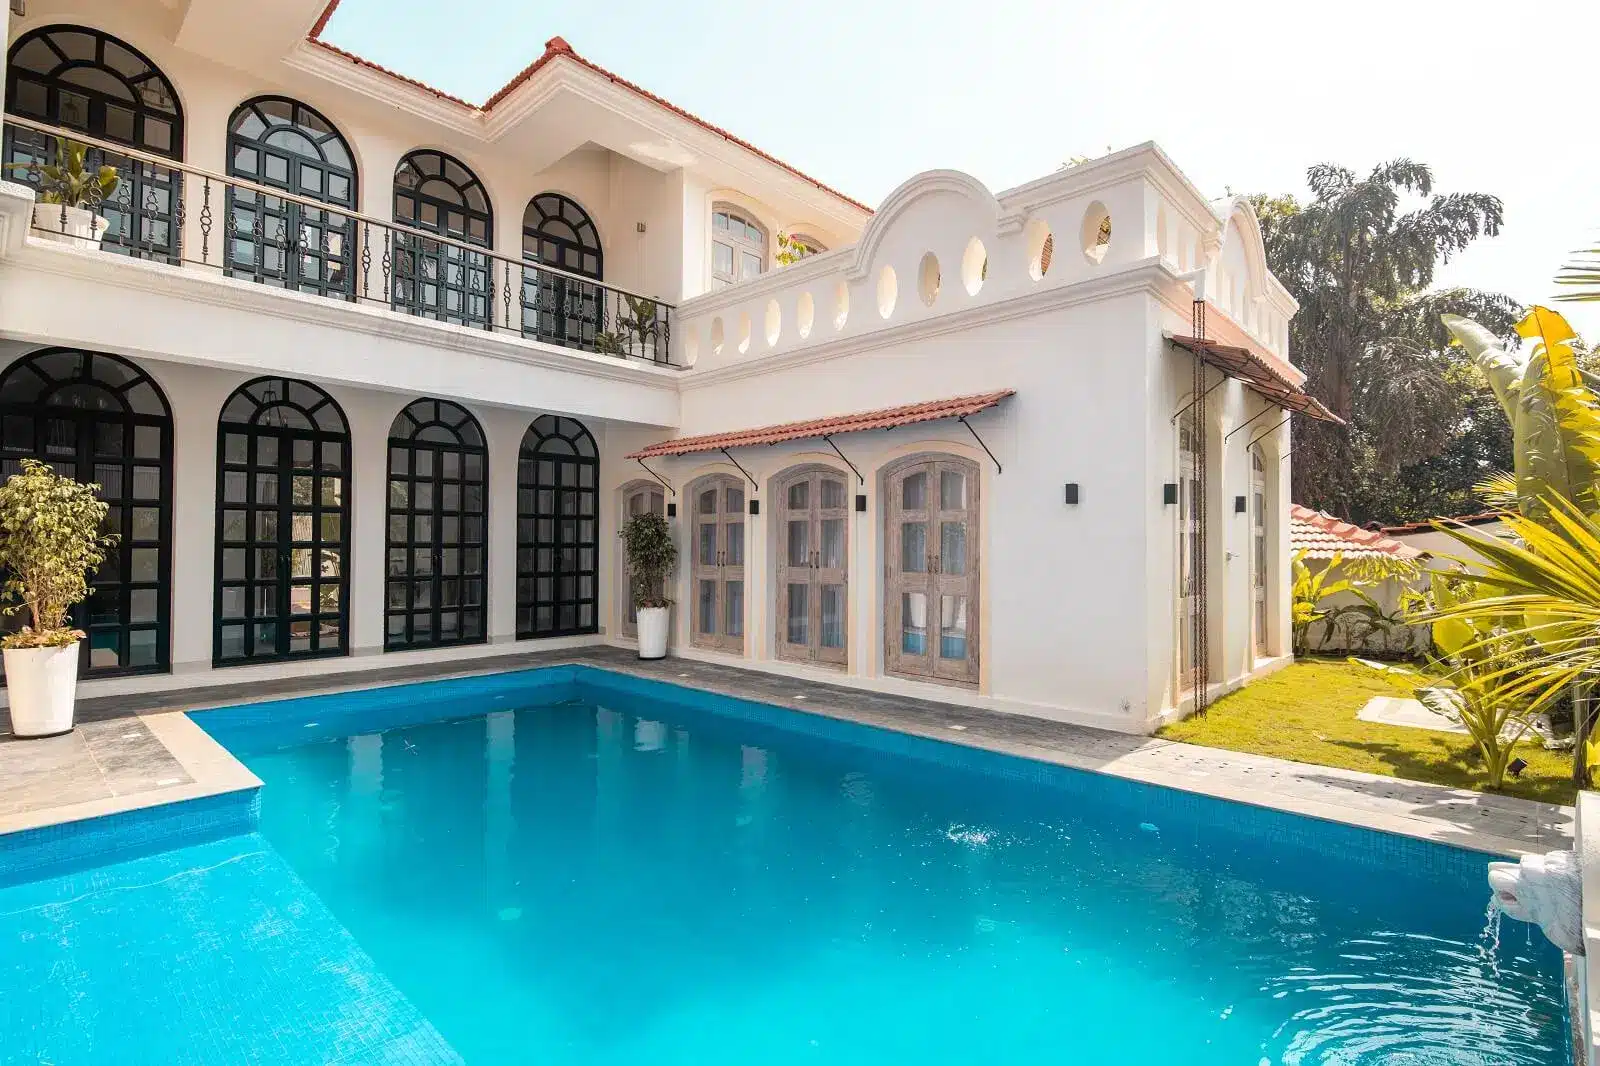 Fonteira Villa A - Premium Villas for Sale in Goa - Beautiful Pool Villa